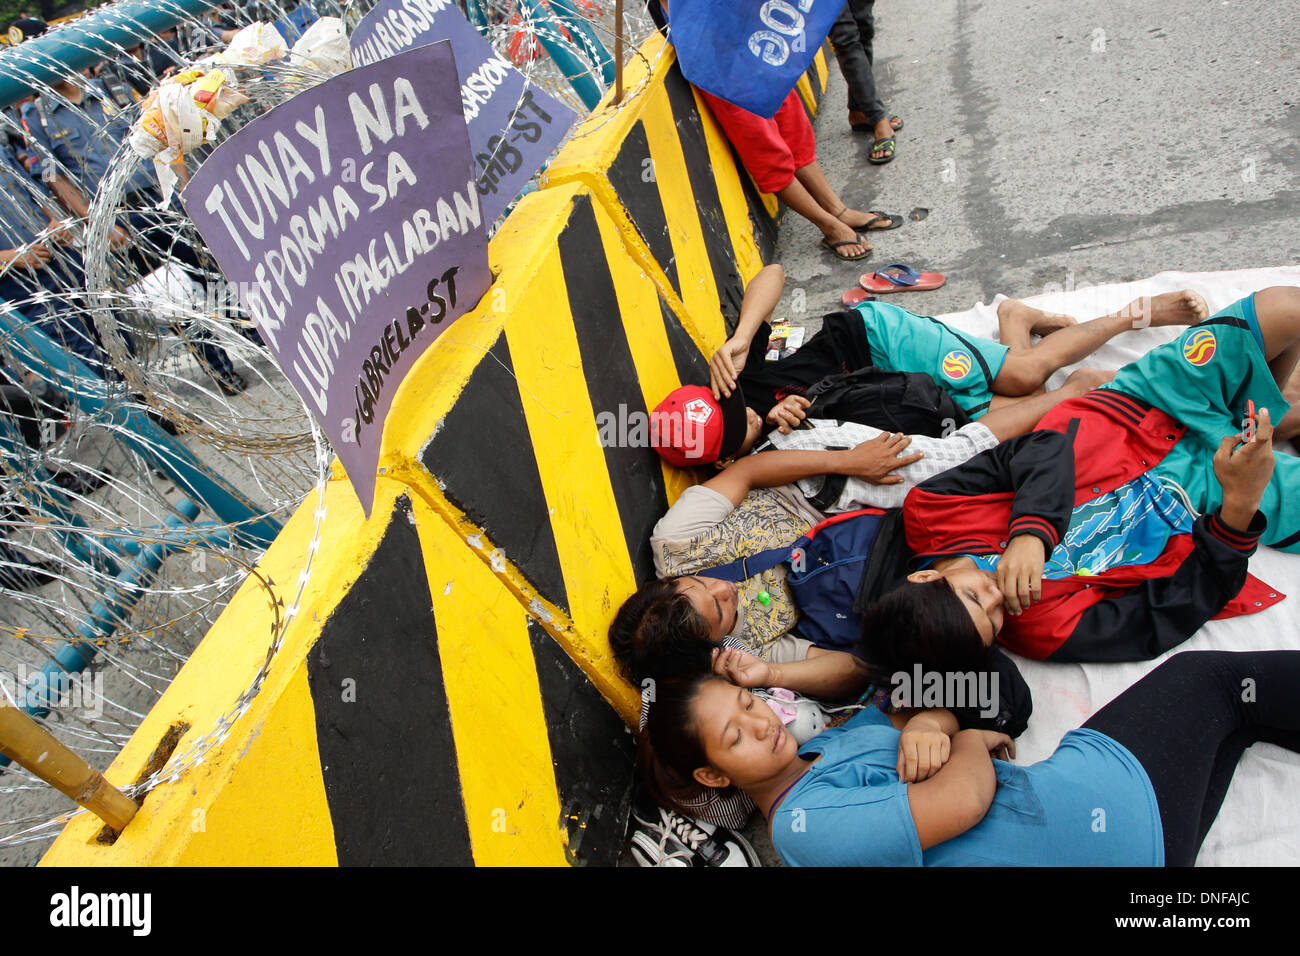 Los manifestantes resto alrededor de una barricada en el Commonwealth, Quezon City Foto de stock